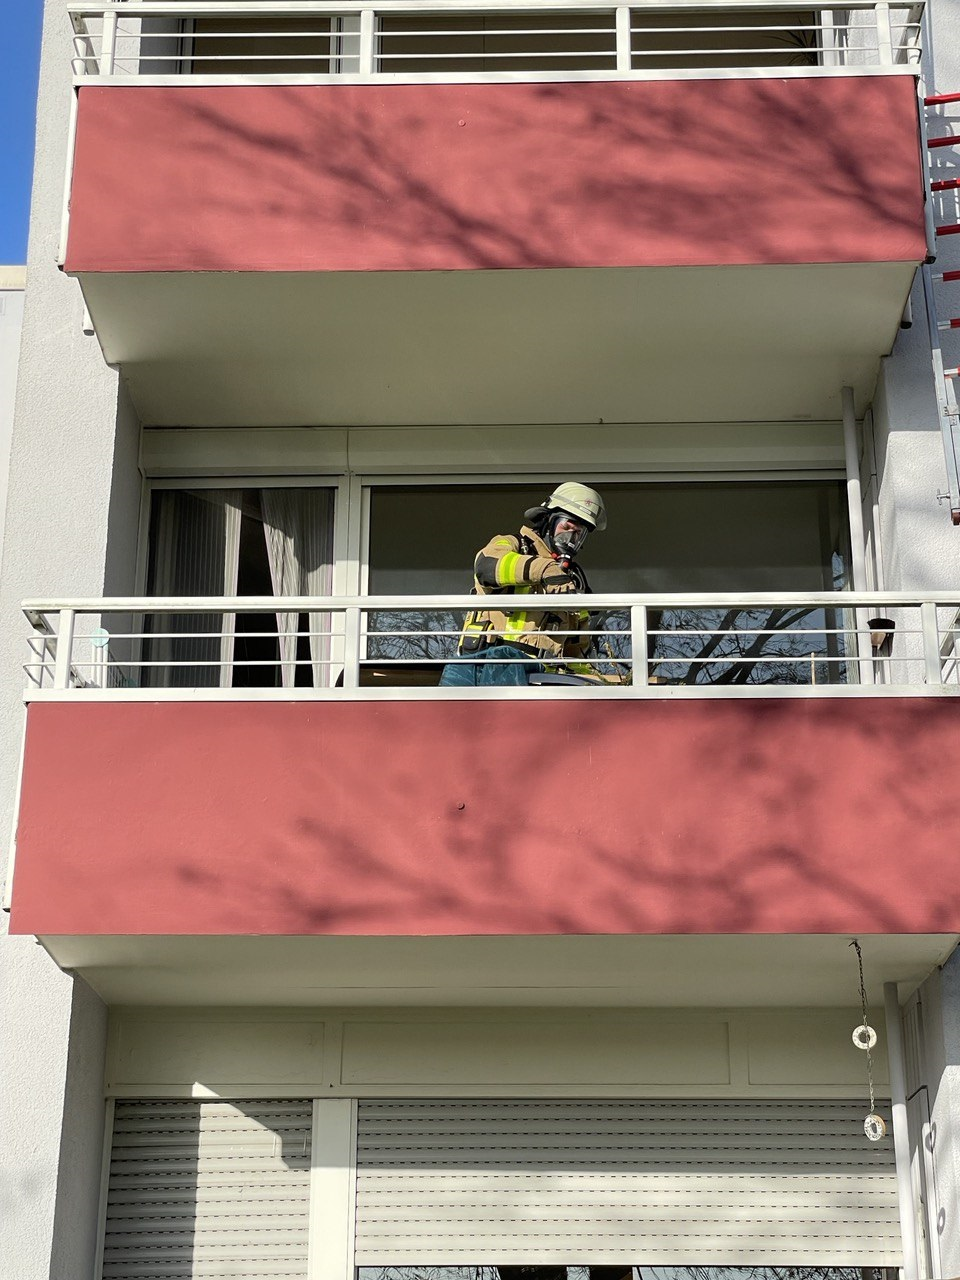 Zu sehen sind ein Balkon und ein Feuerwehrmann